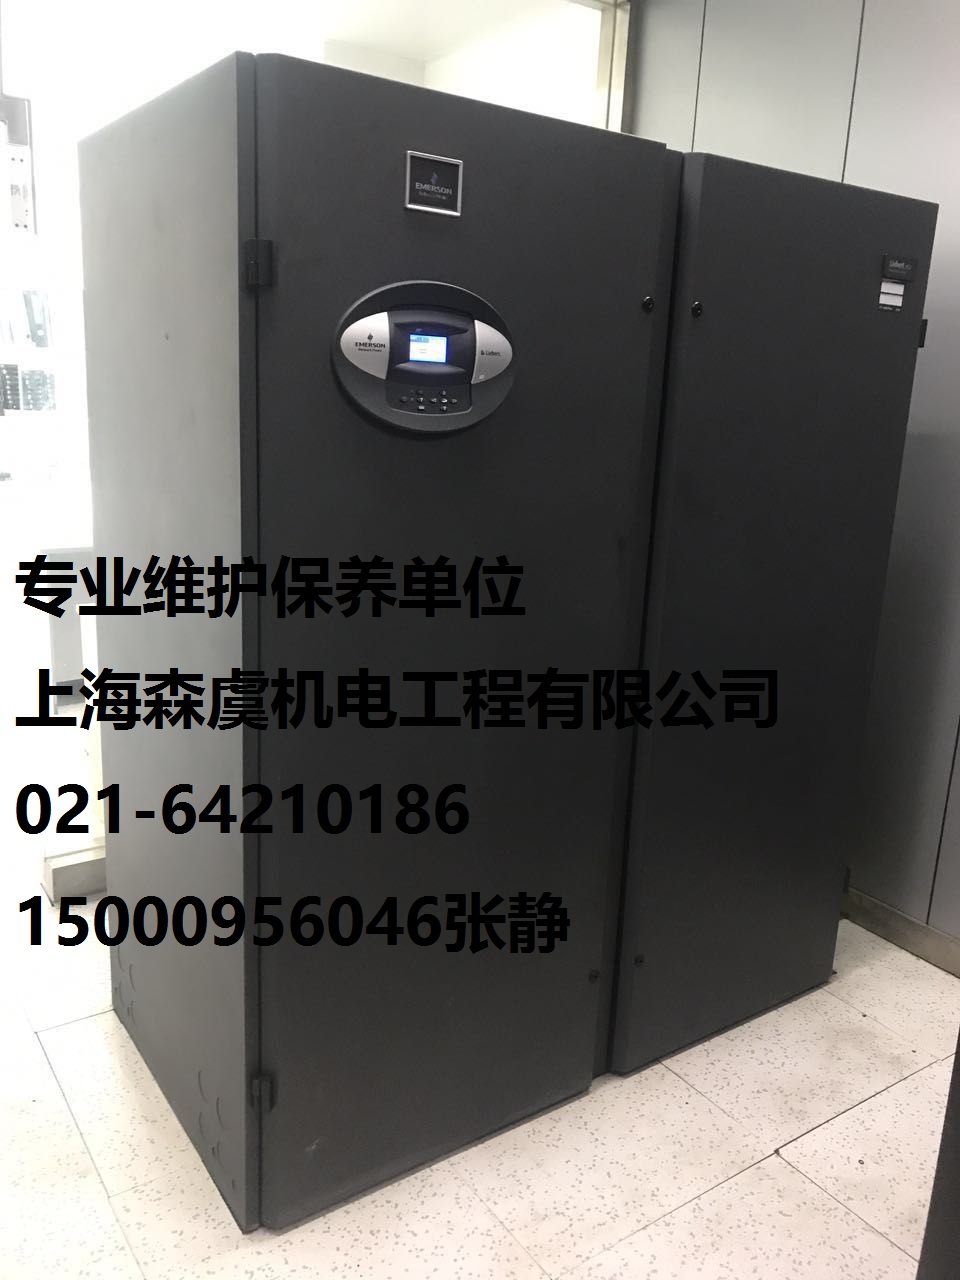 上海维修维谛艾默生机房空调单 上海维修维谛艾默生机房空调单图片